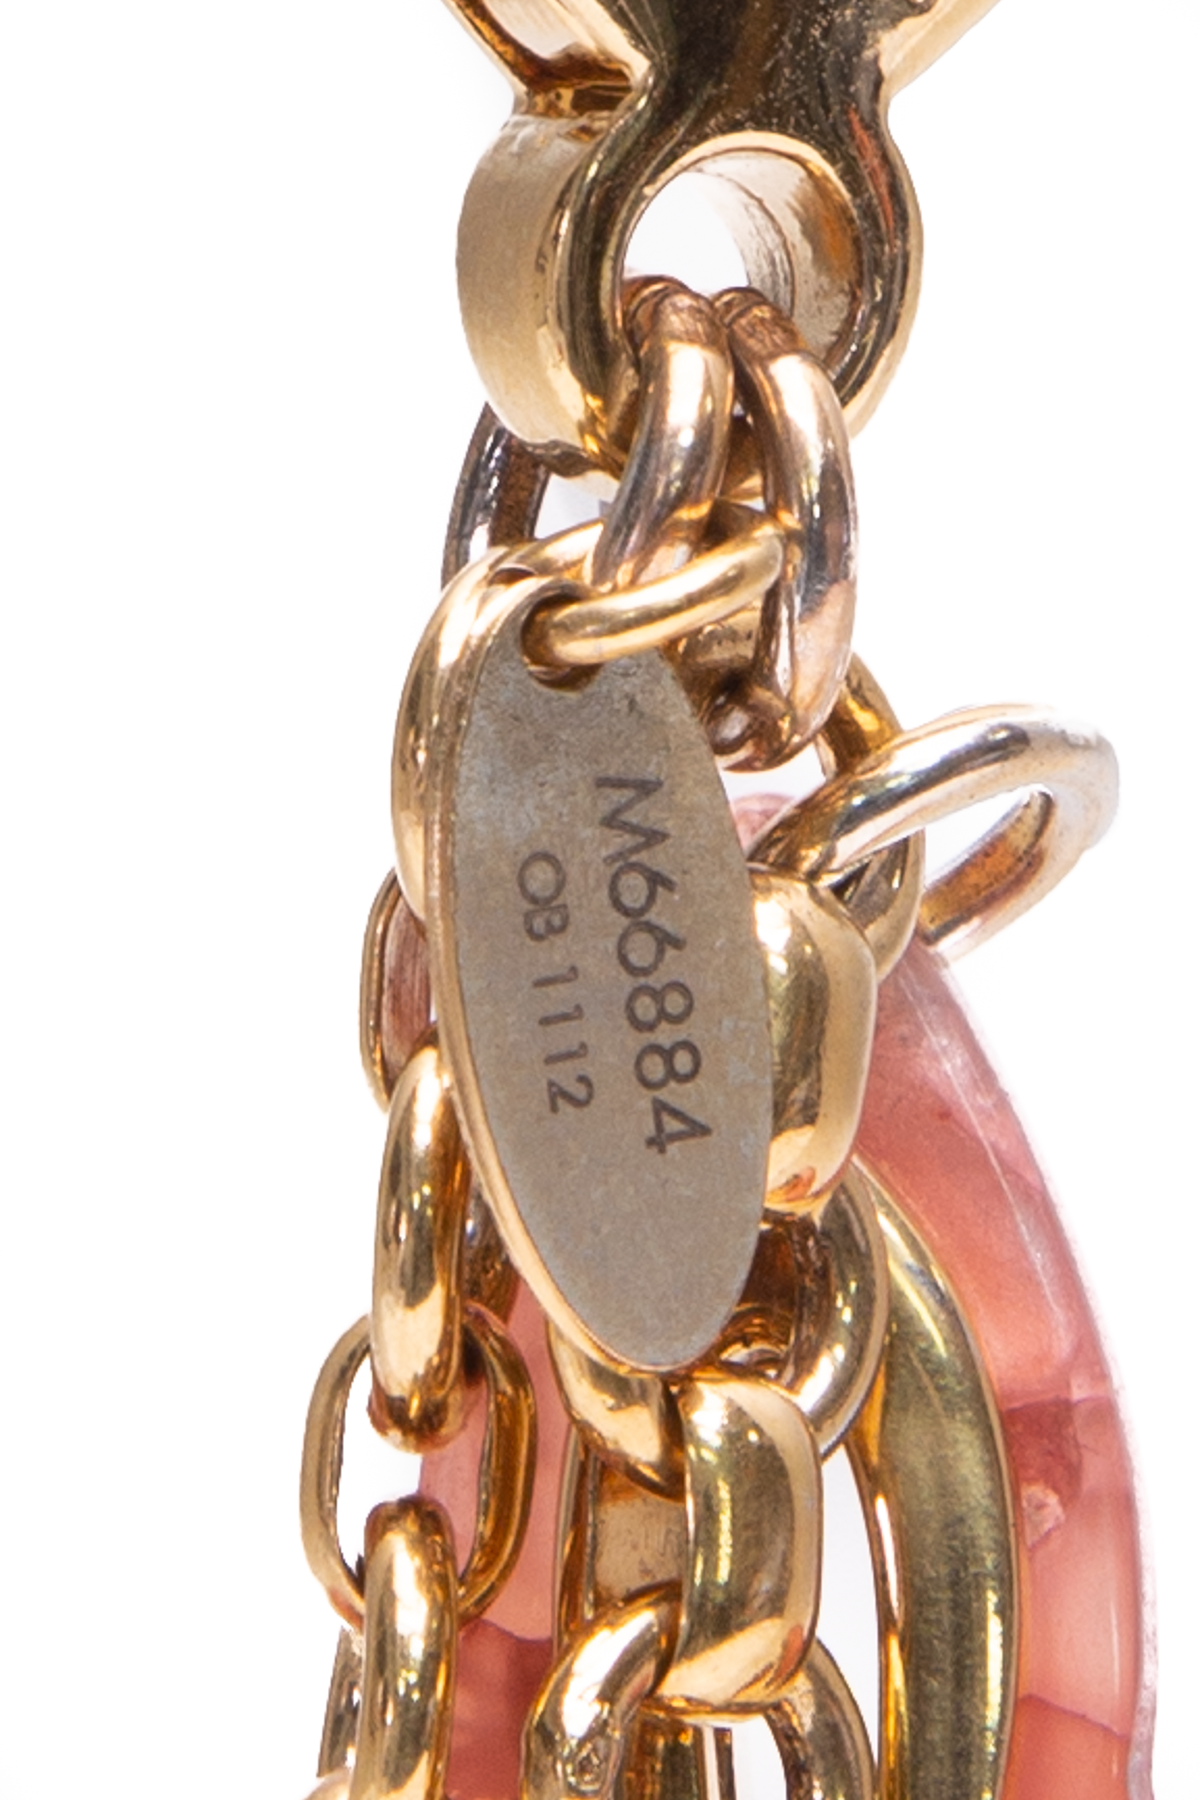 Louis Vuitton Kaleido V Padlock Key Ring